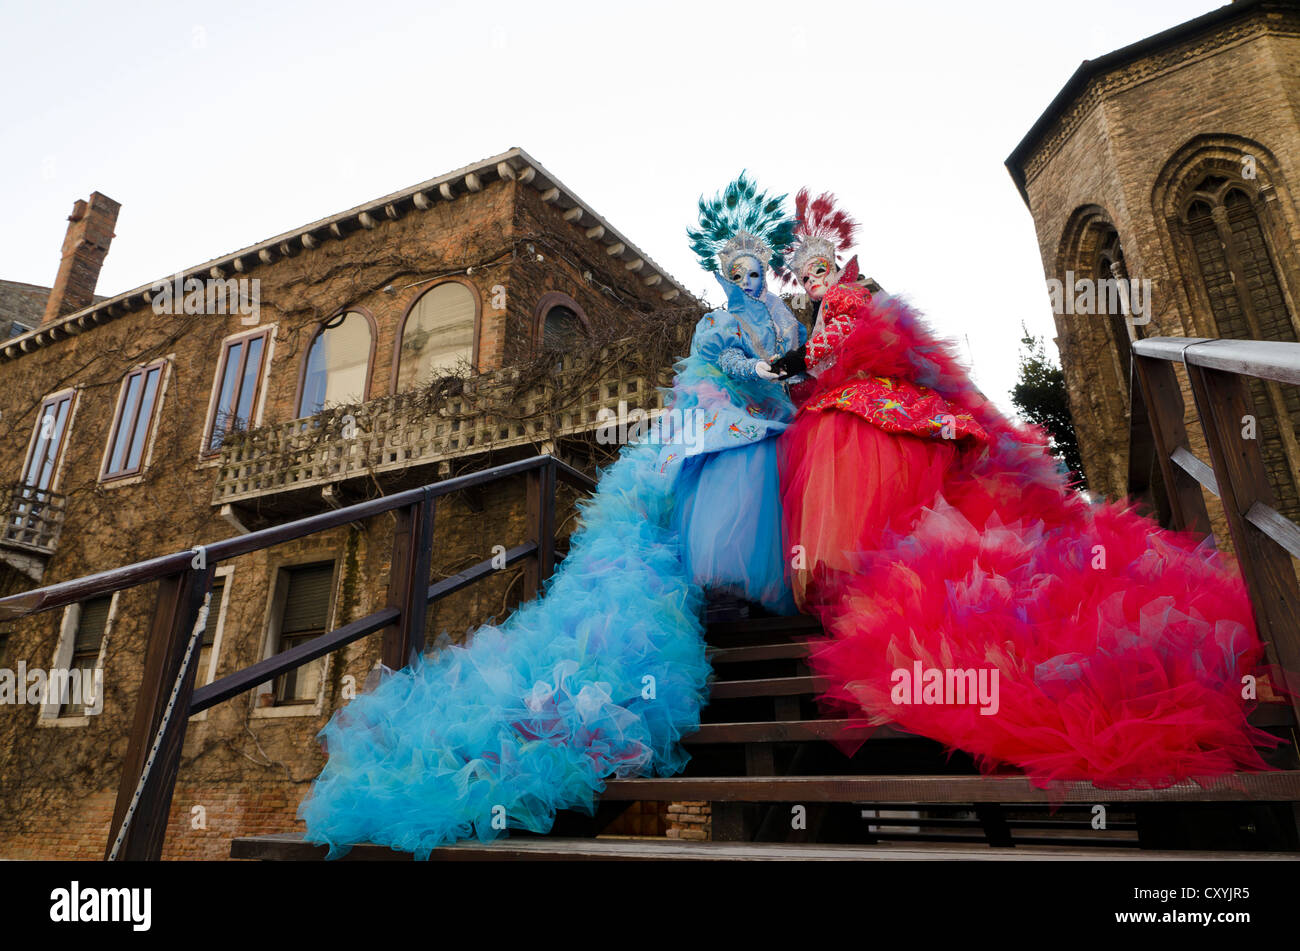 Venetian masks, Carnevale, carnival in Venice, Veneto, Italy, Europe Stock Photo